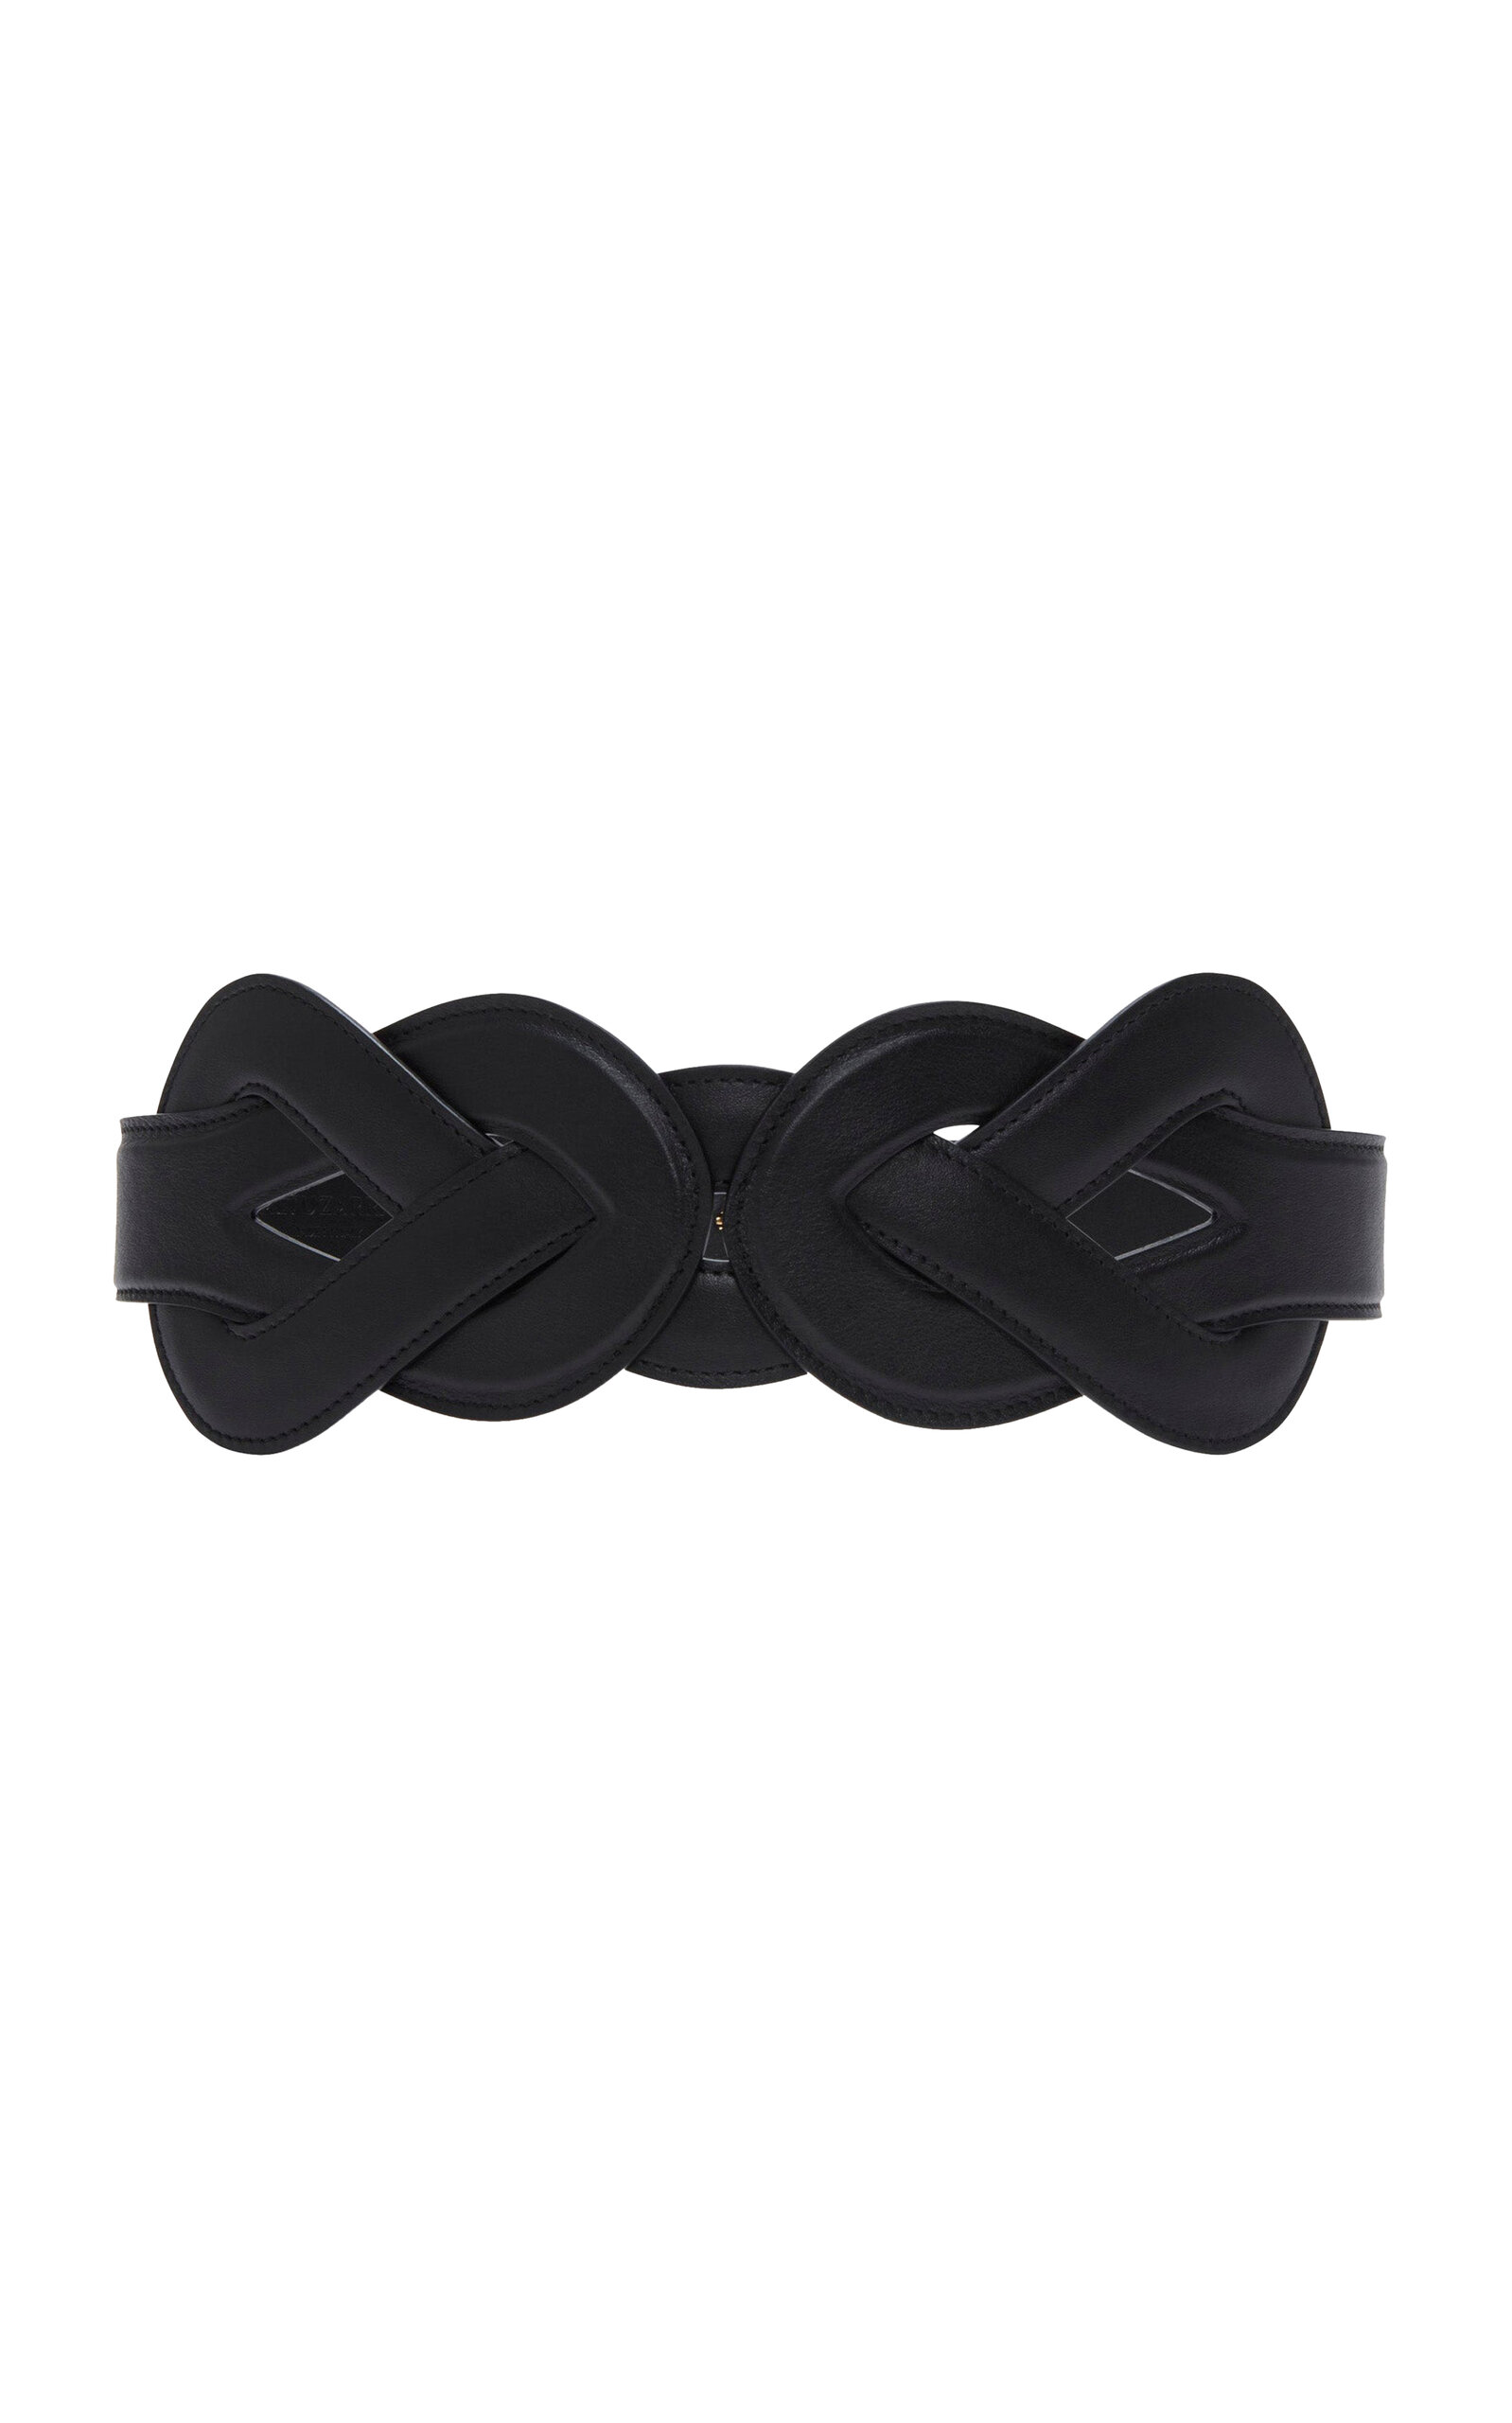 Altuzarra - Loopy Leather Belt - Black - XS/S - Moda Operandi